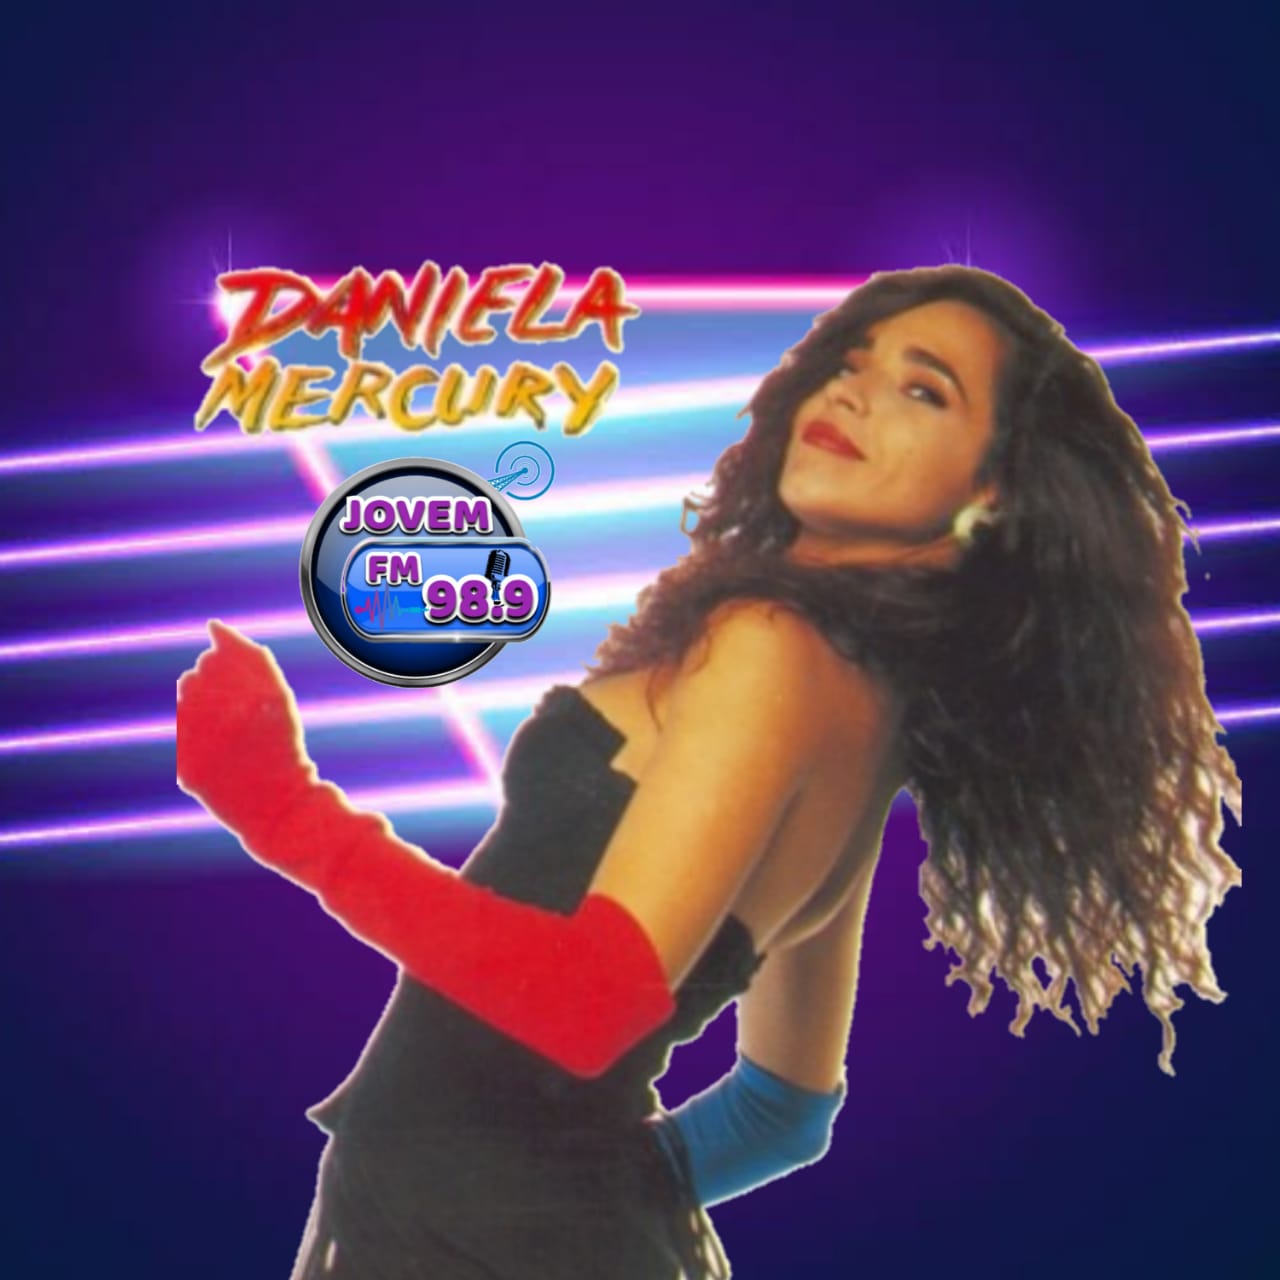 Daniela Mercury